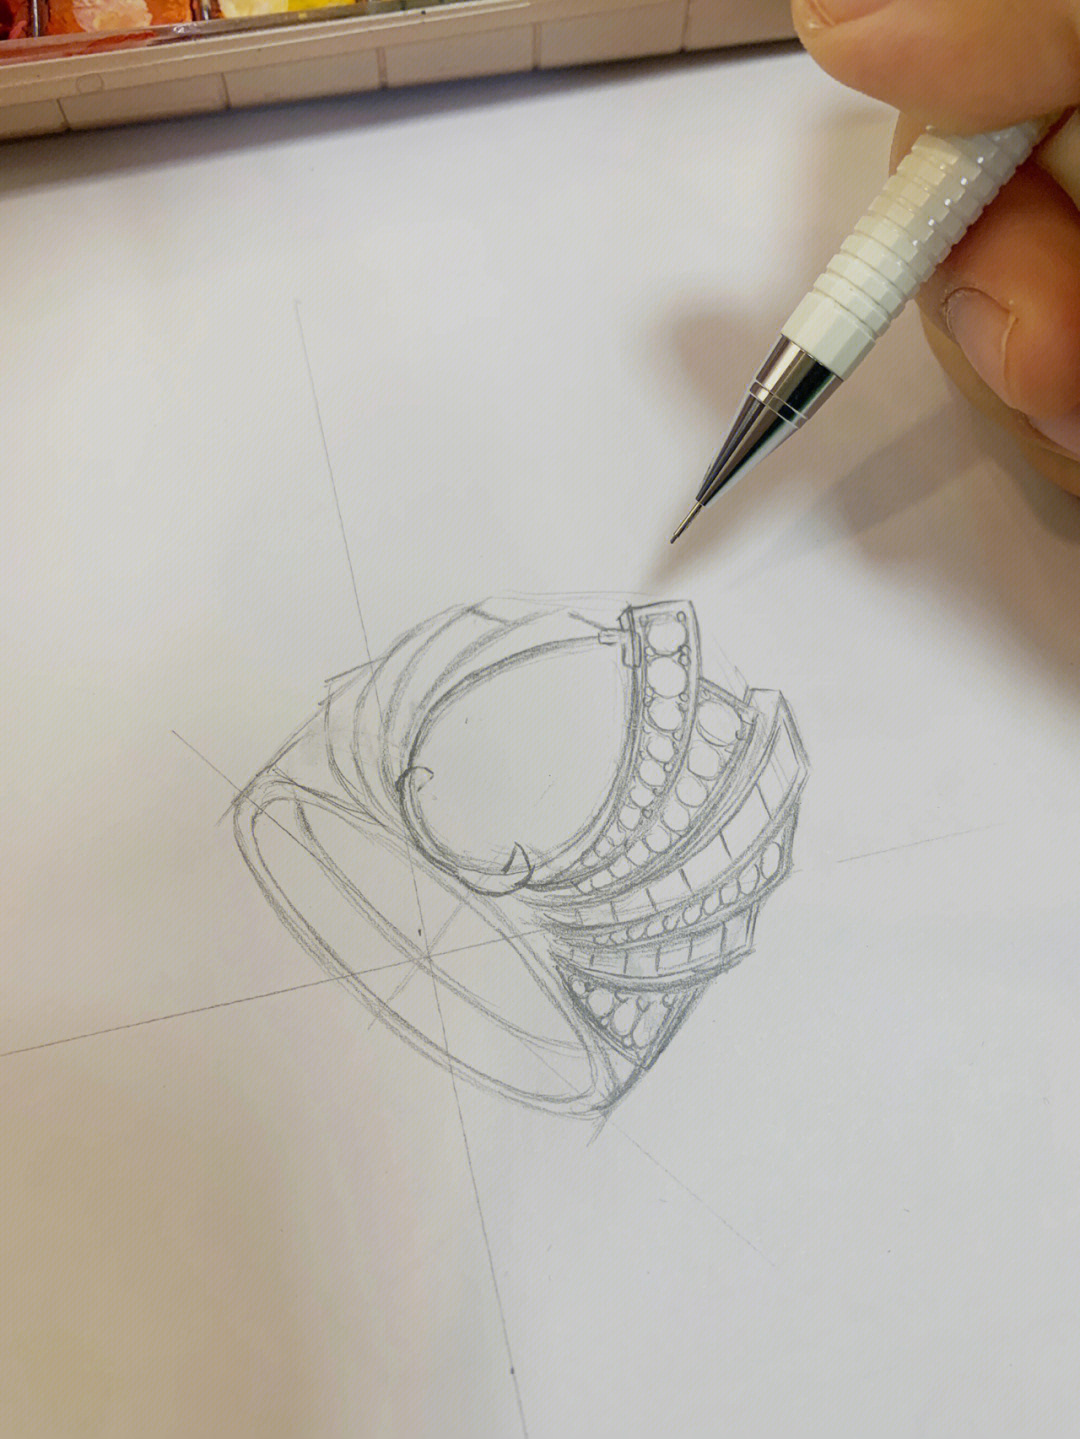 步骤:1,铅笔起稿,根据我们绘图思路画出戒指透视及款式细节;2,勾线笔